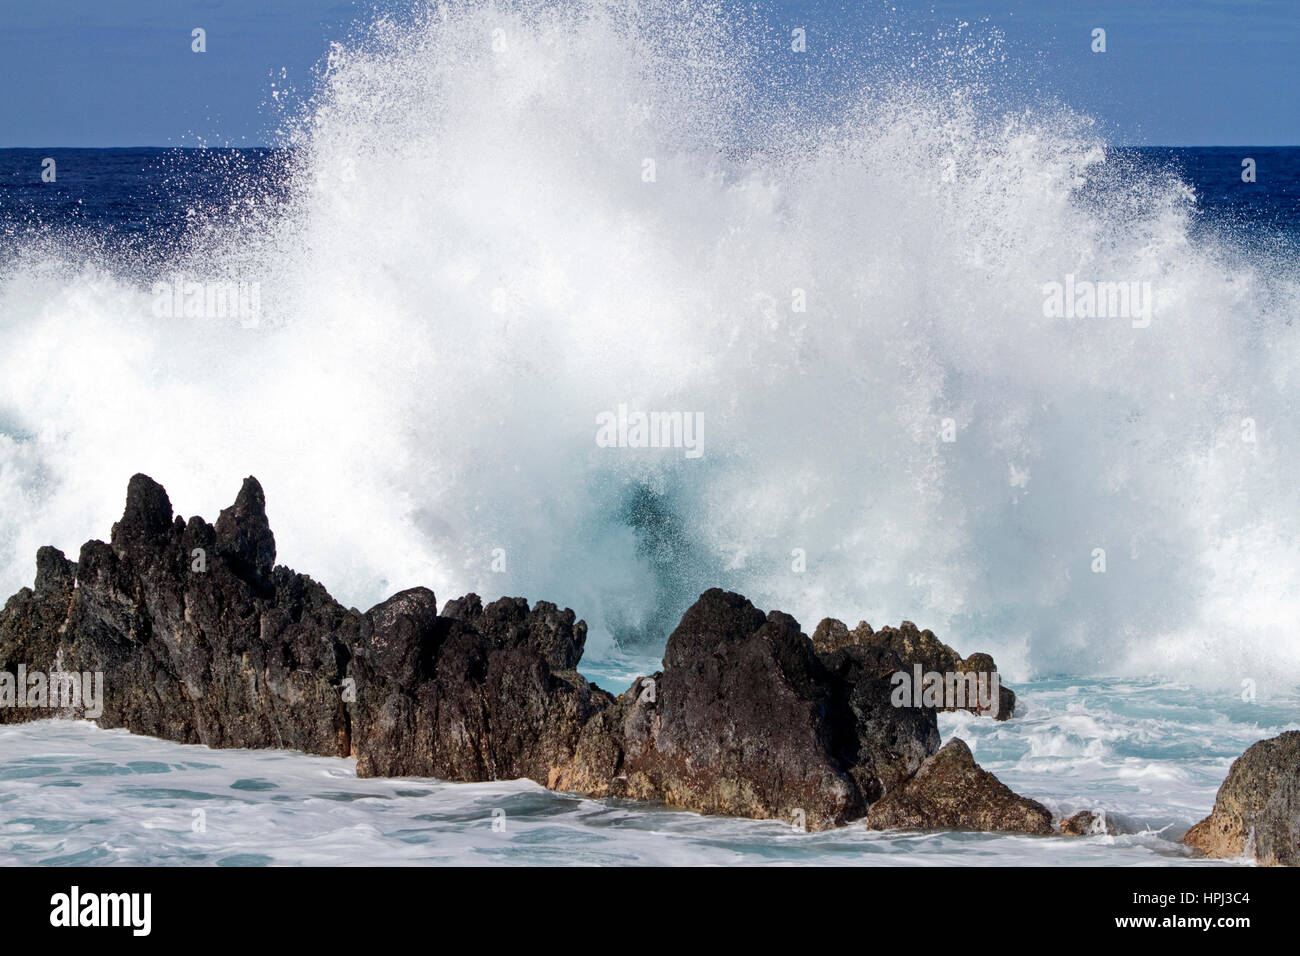 Les vagues déferlent sur la côte rocheuse sur la grande île de Hawaii, USA. Banque D'Images